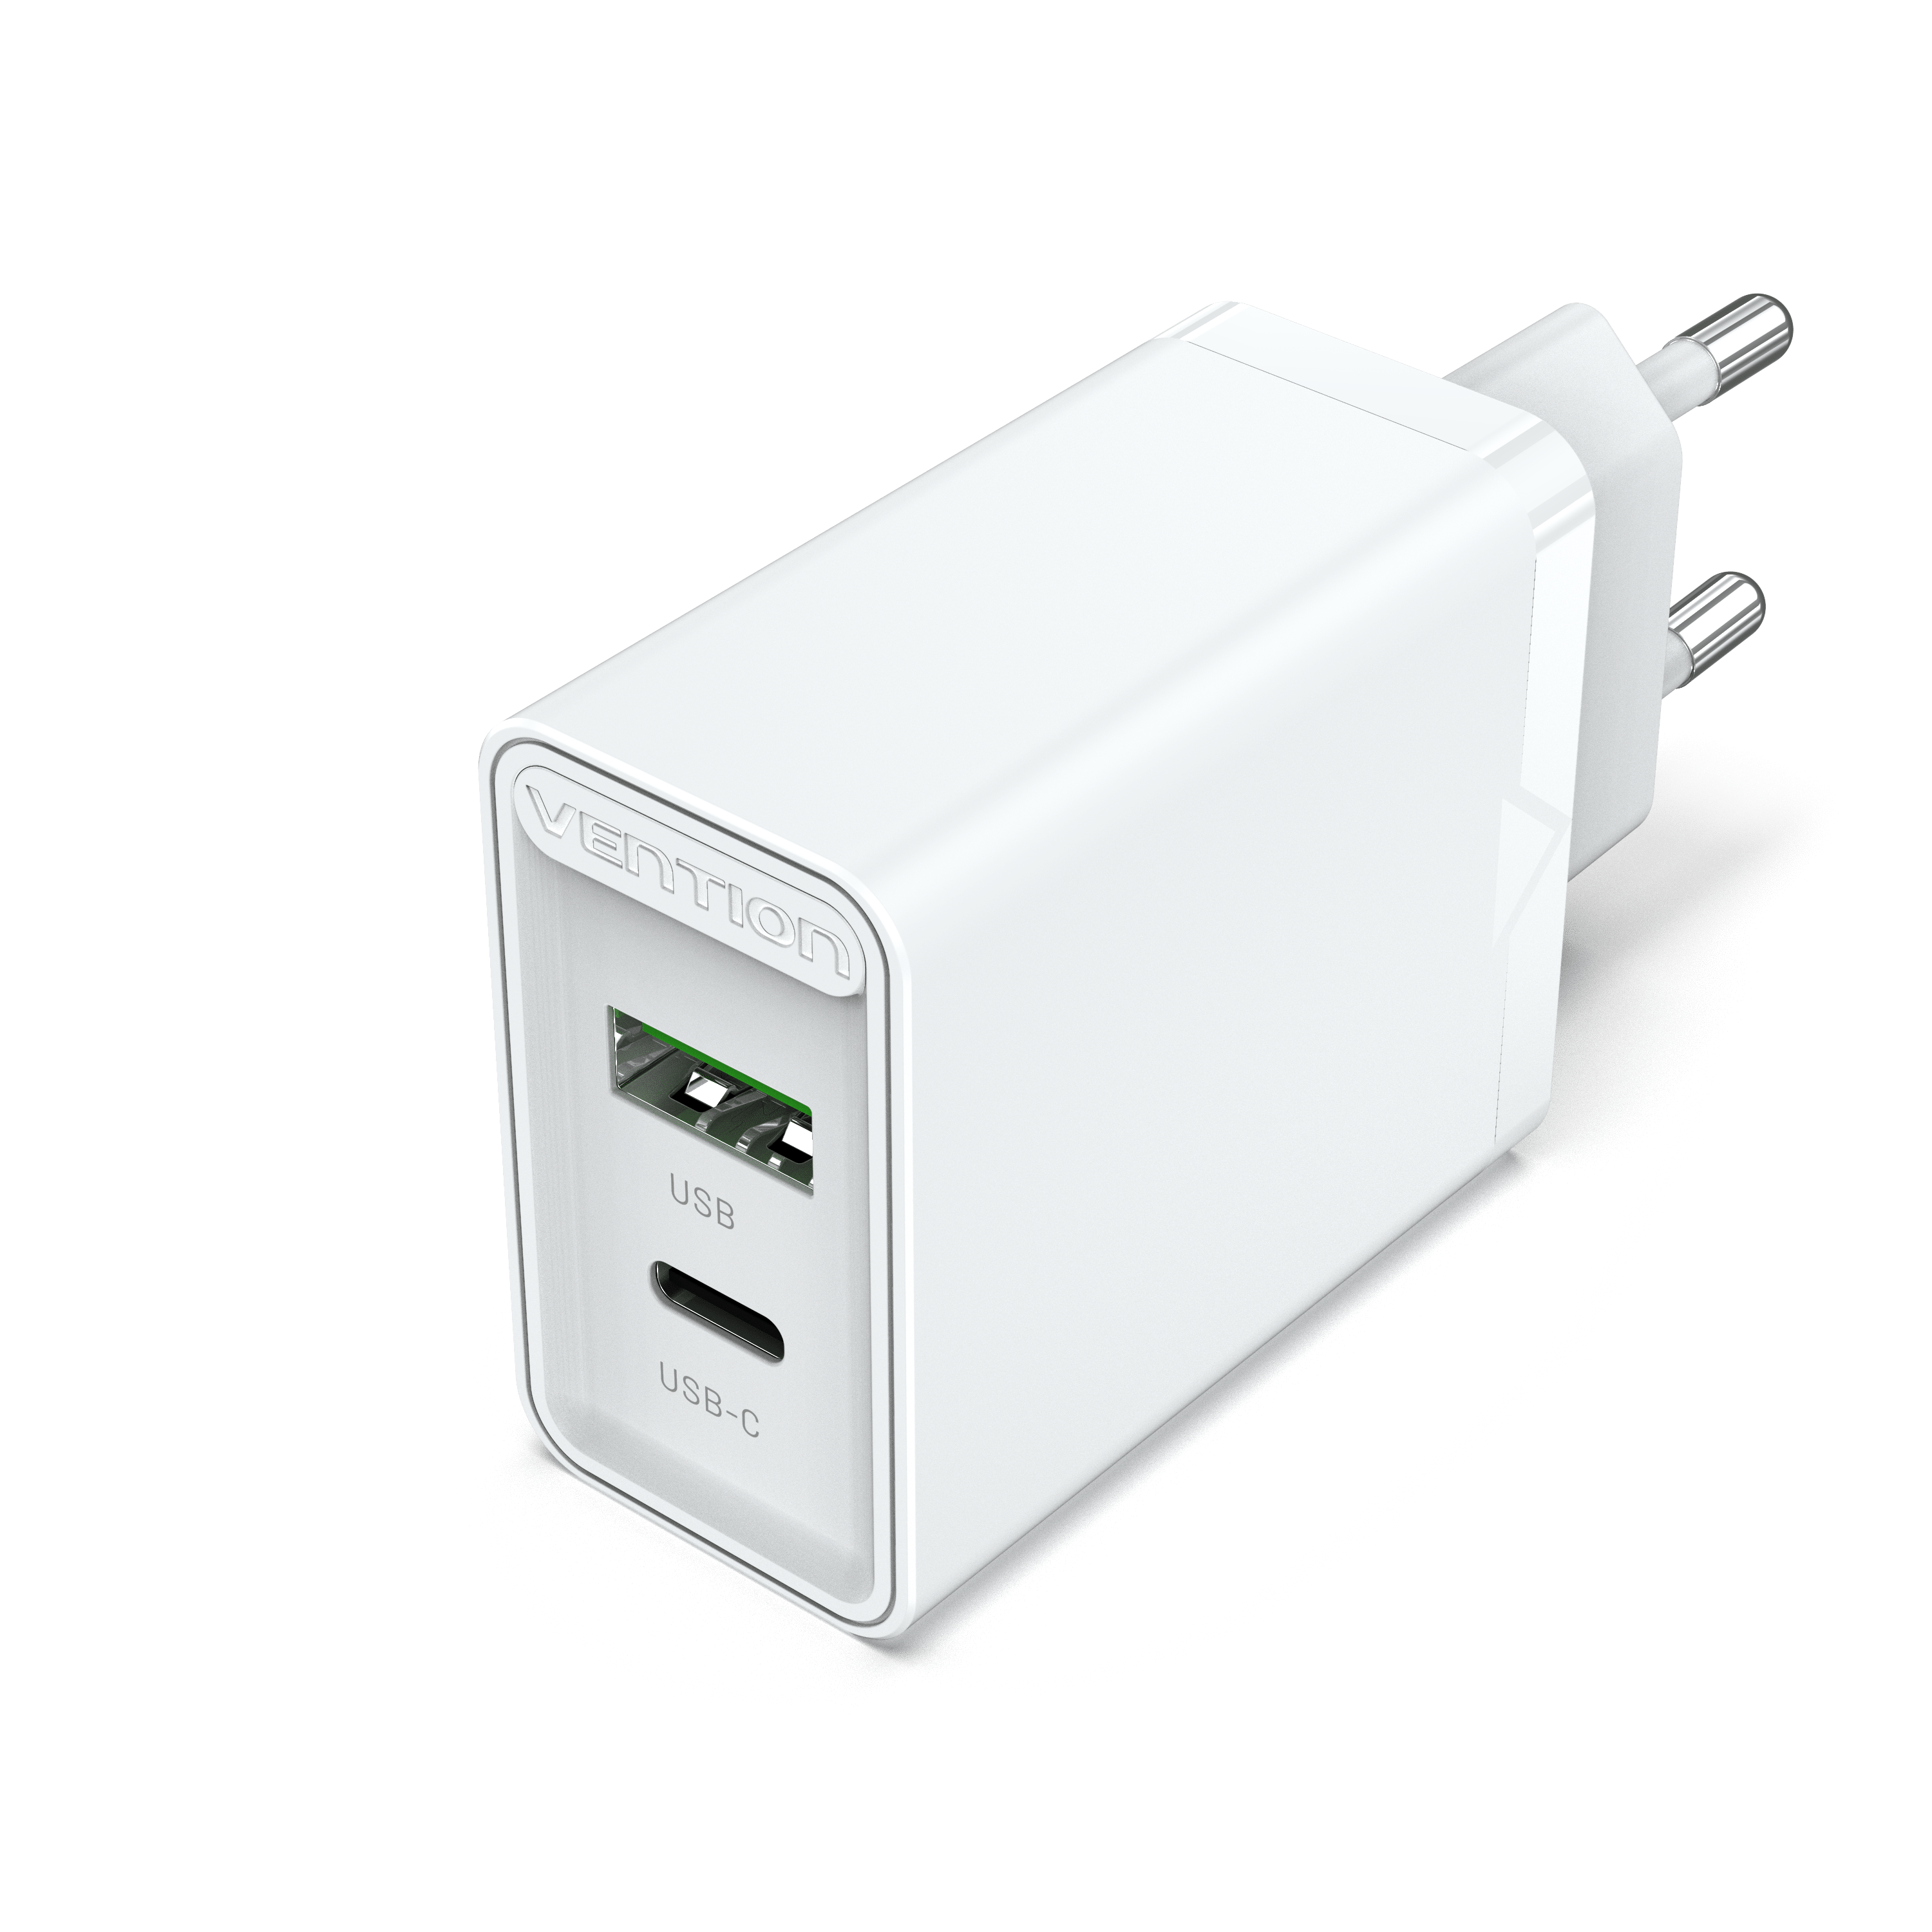 Adaptateur de prise multiple prise sans câble prise murale blanc blanc  adaptateur de charge chargeur USB pour appareil photo